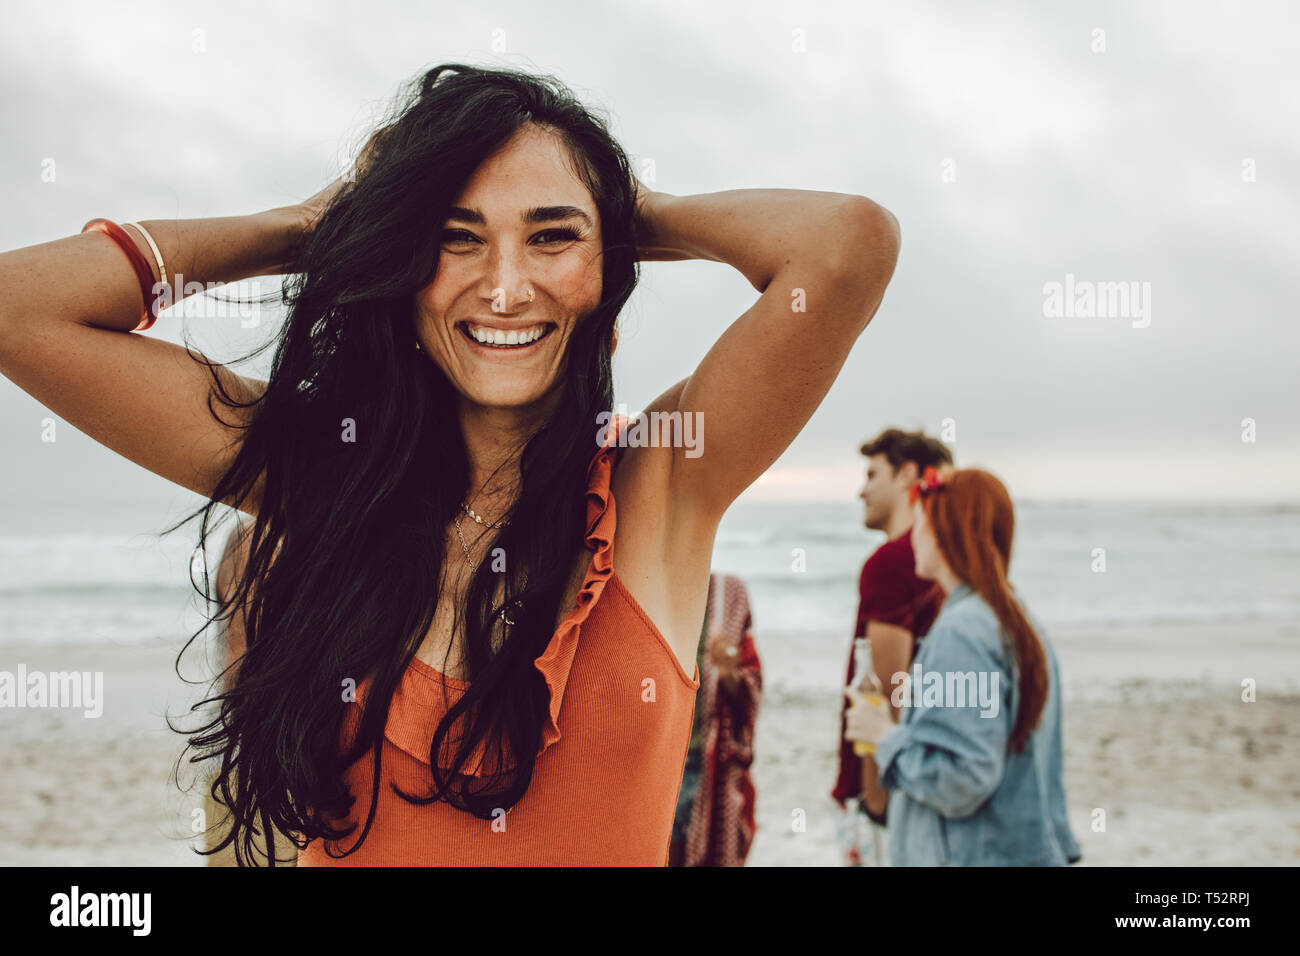 Bella giovane donna sulla spiaggia con gli amici all'indietro. Allegro femmina in casuals in piedi presso la spiaggia con un gruppo di amici in background. Foto Stock